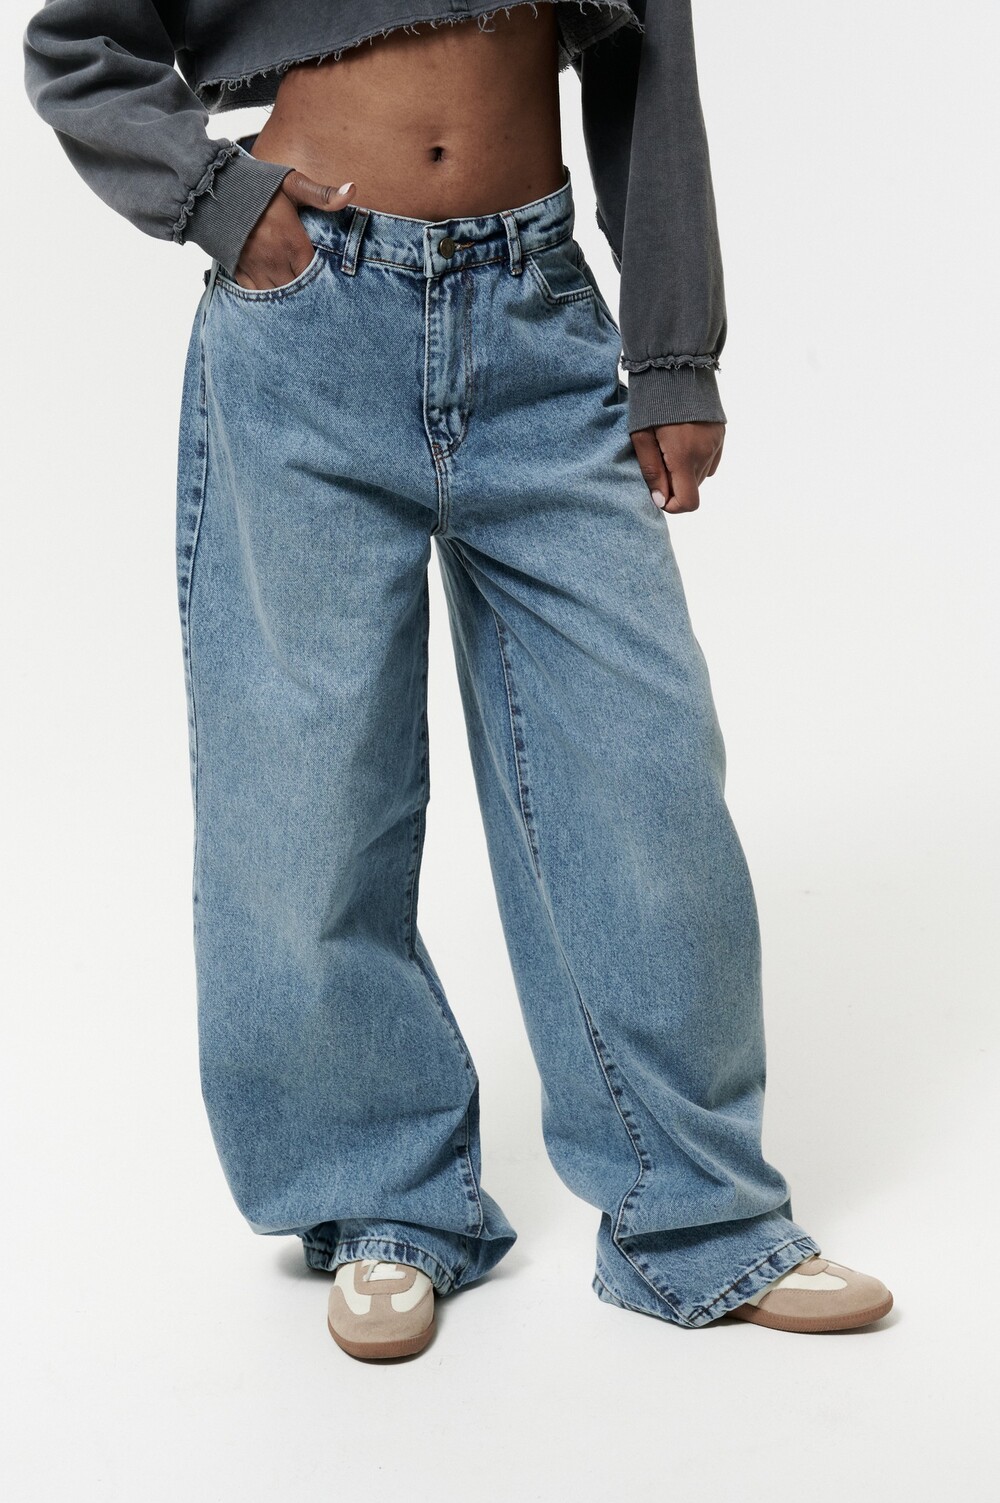 Wide leg jeans